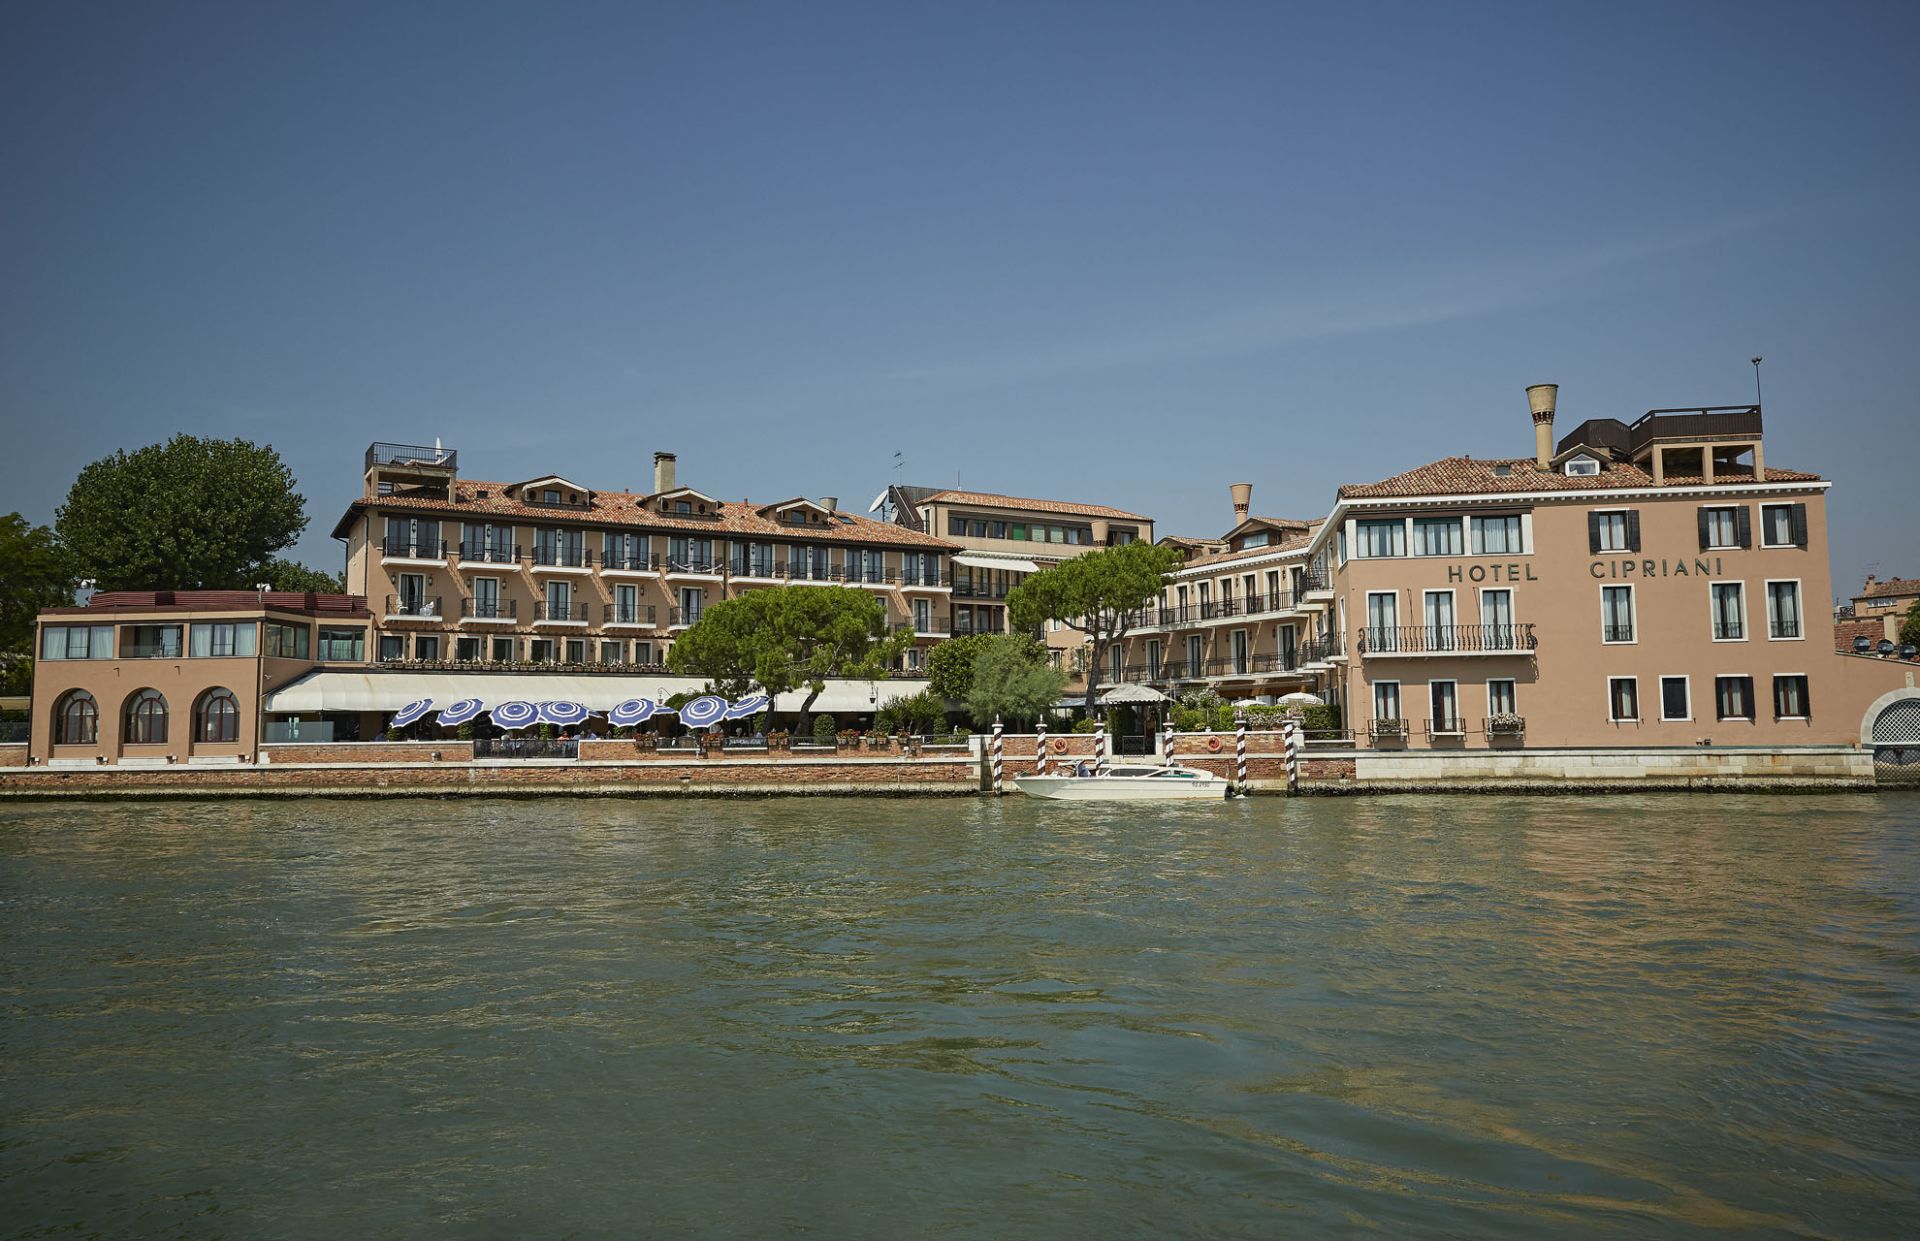 Hotel Cipriani, Venice, Italy